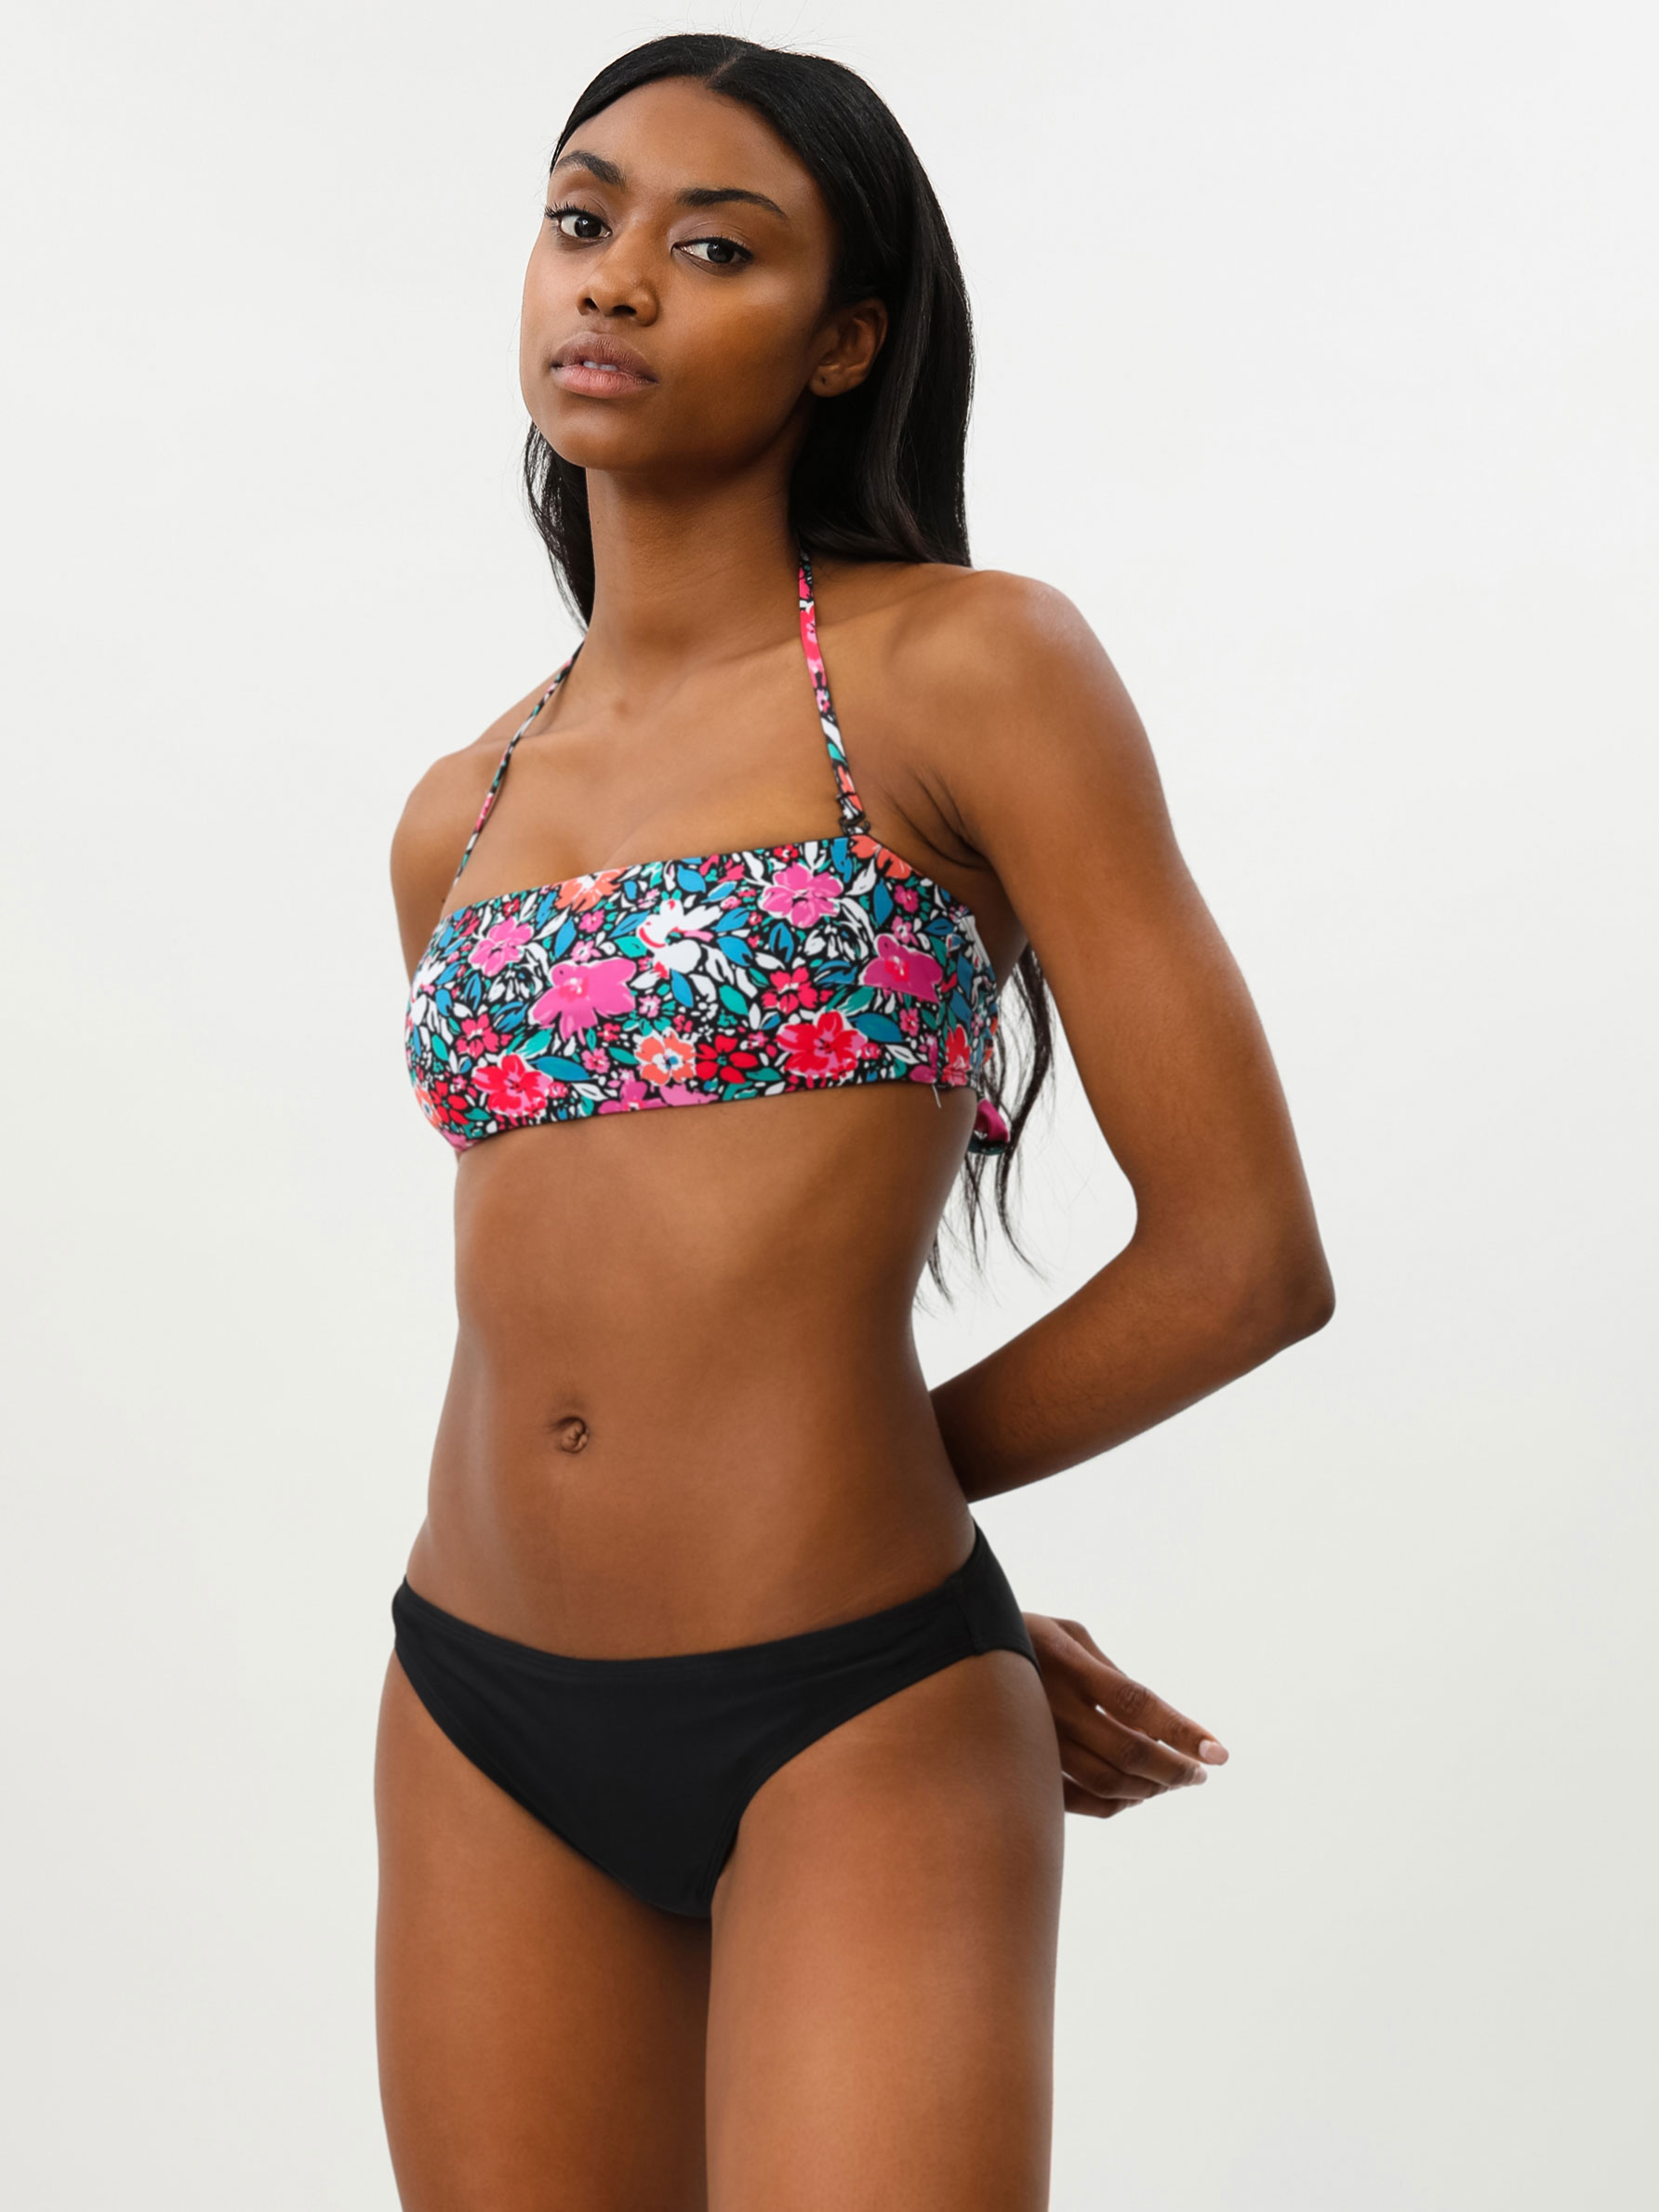 Lefties presenta estos 4 nuevos modelos del bikini más barato del verano 2021